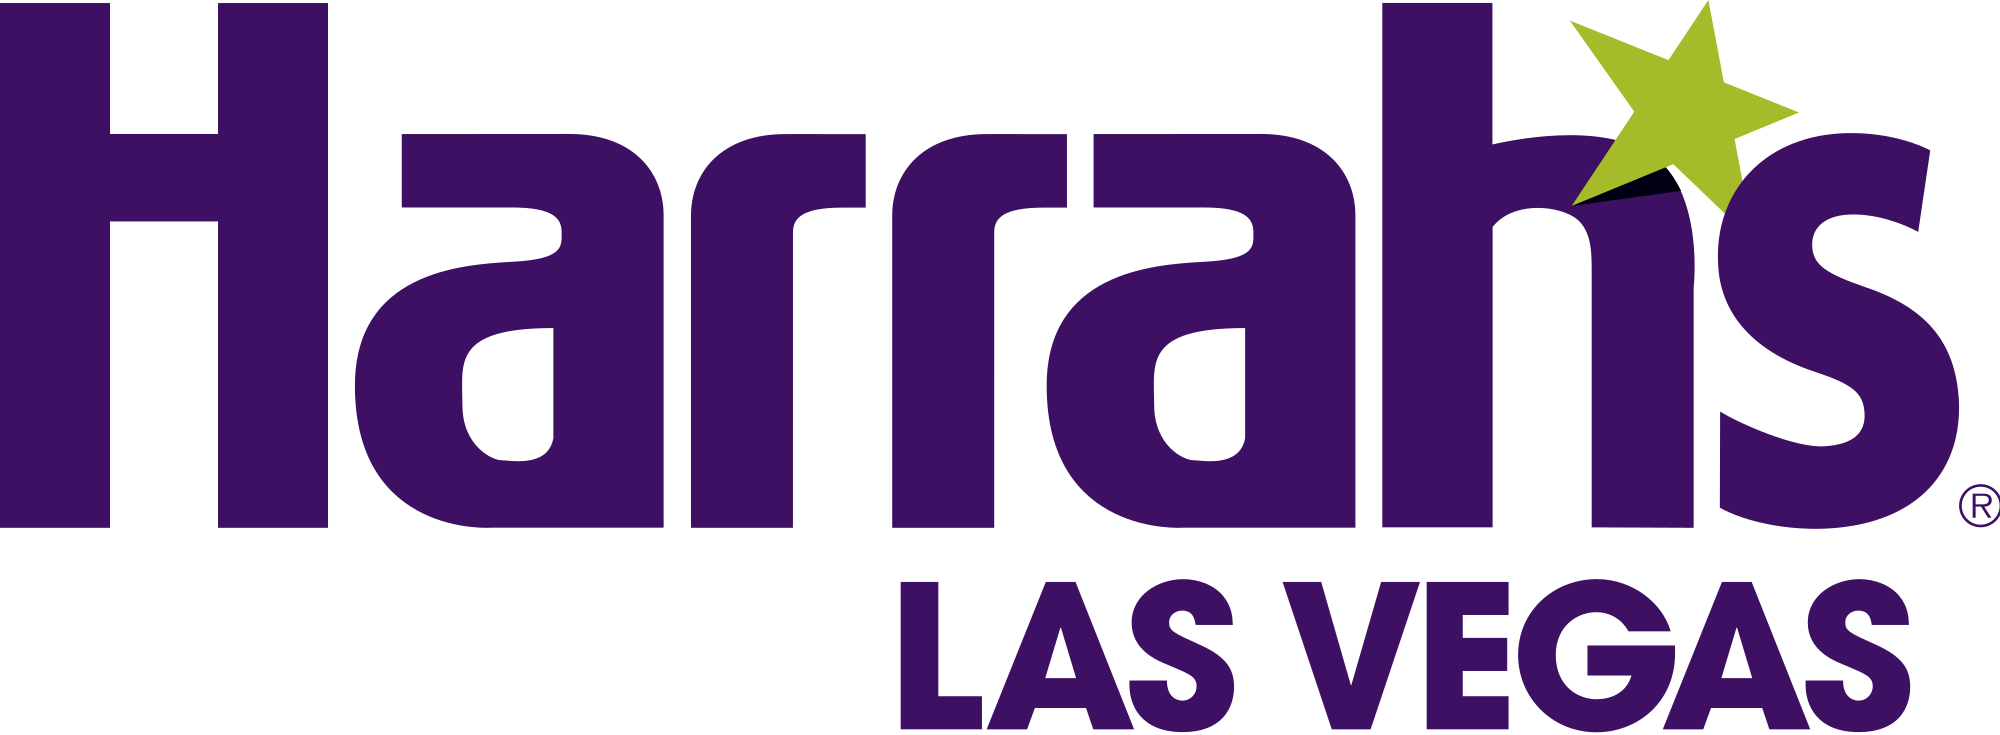 Las Vegas Logo - File:Harrah's Las Vegas logo.svg - Wikimedia Commons